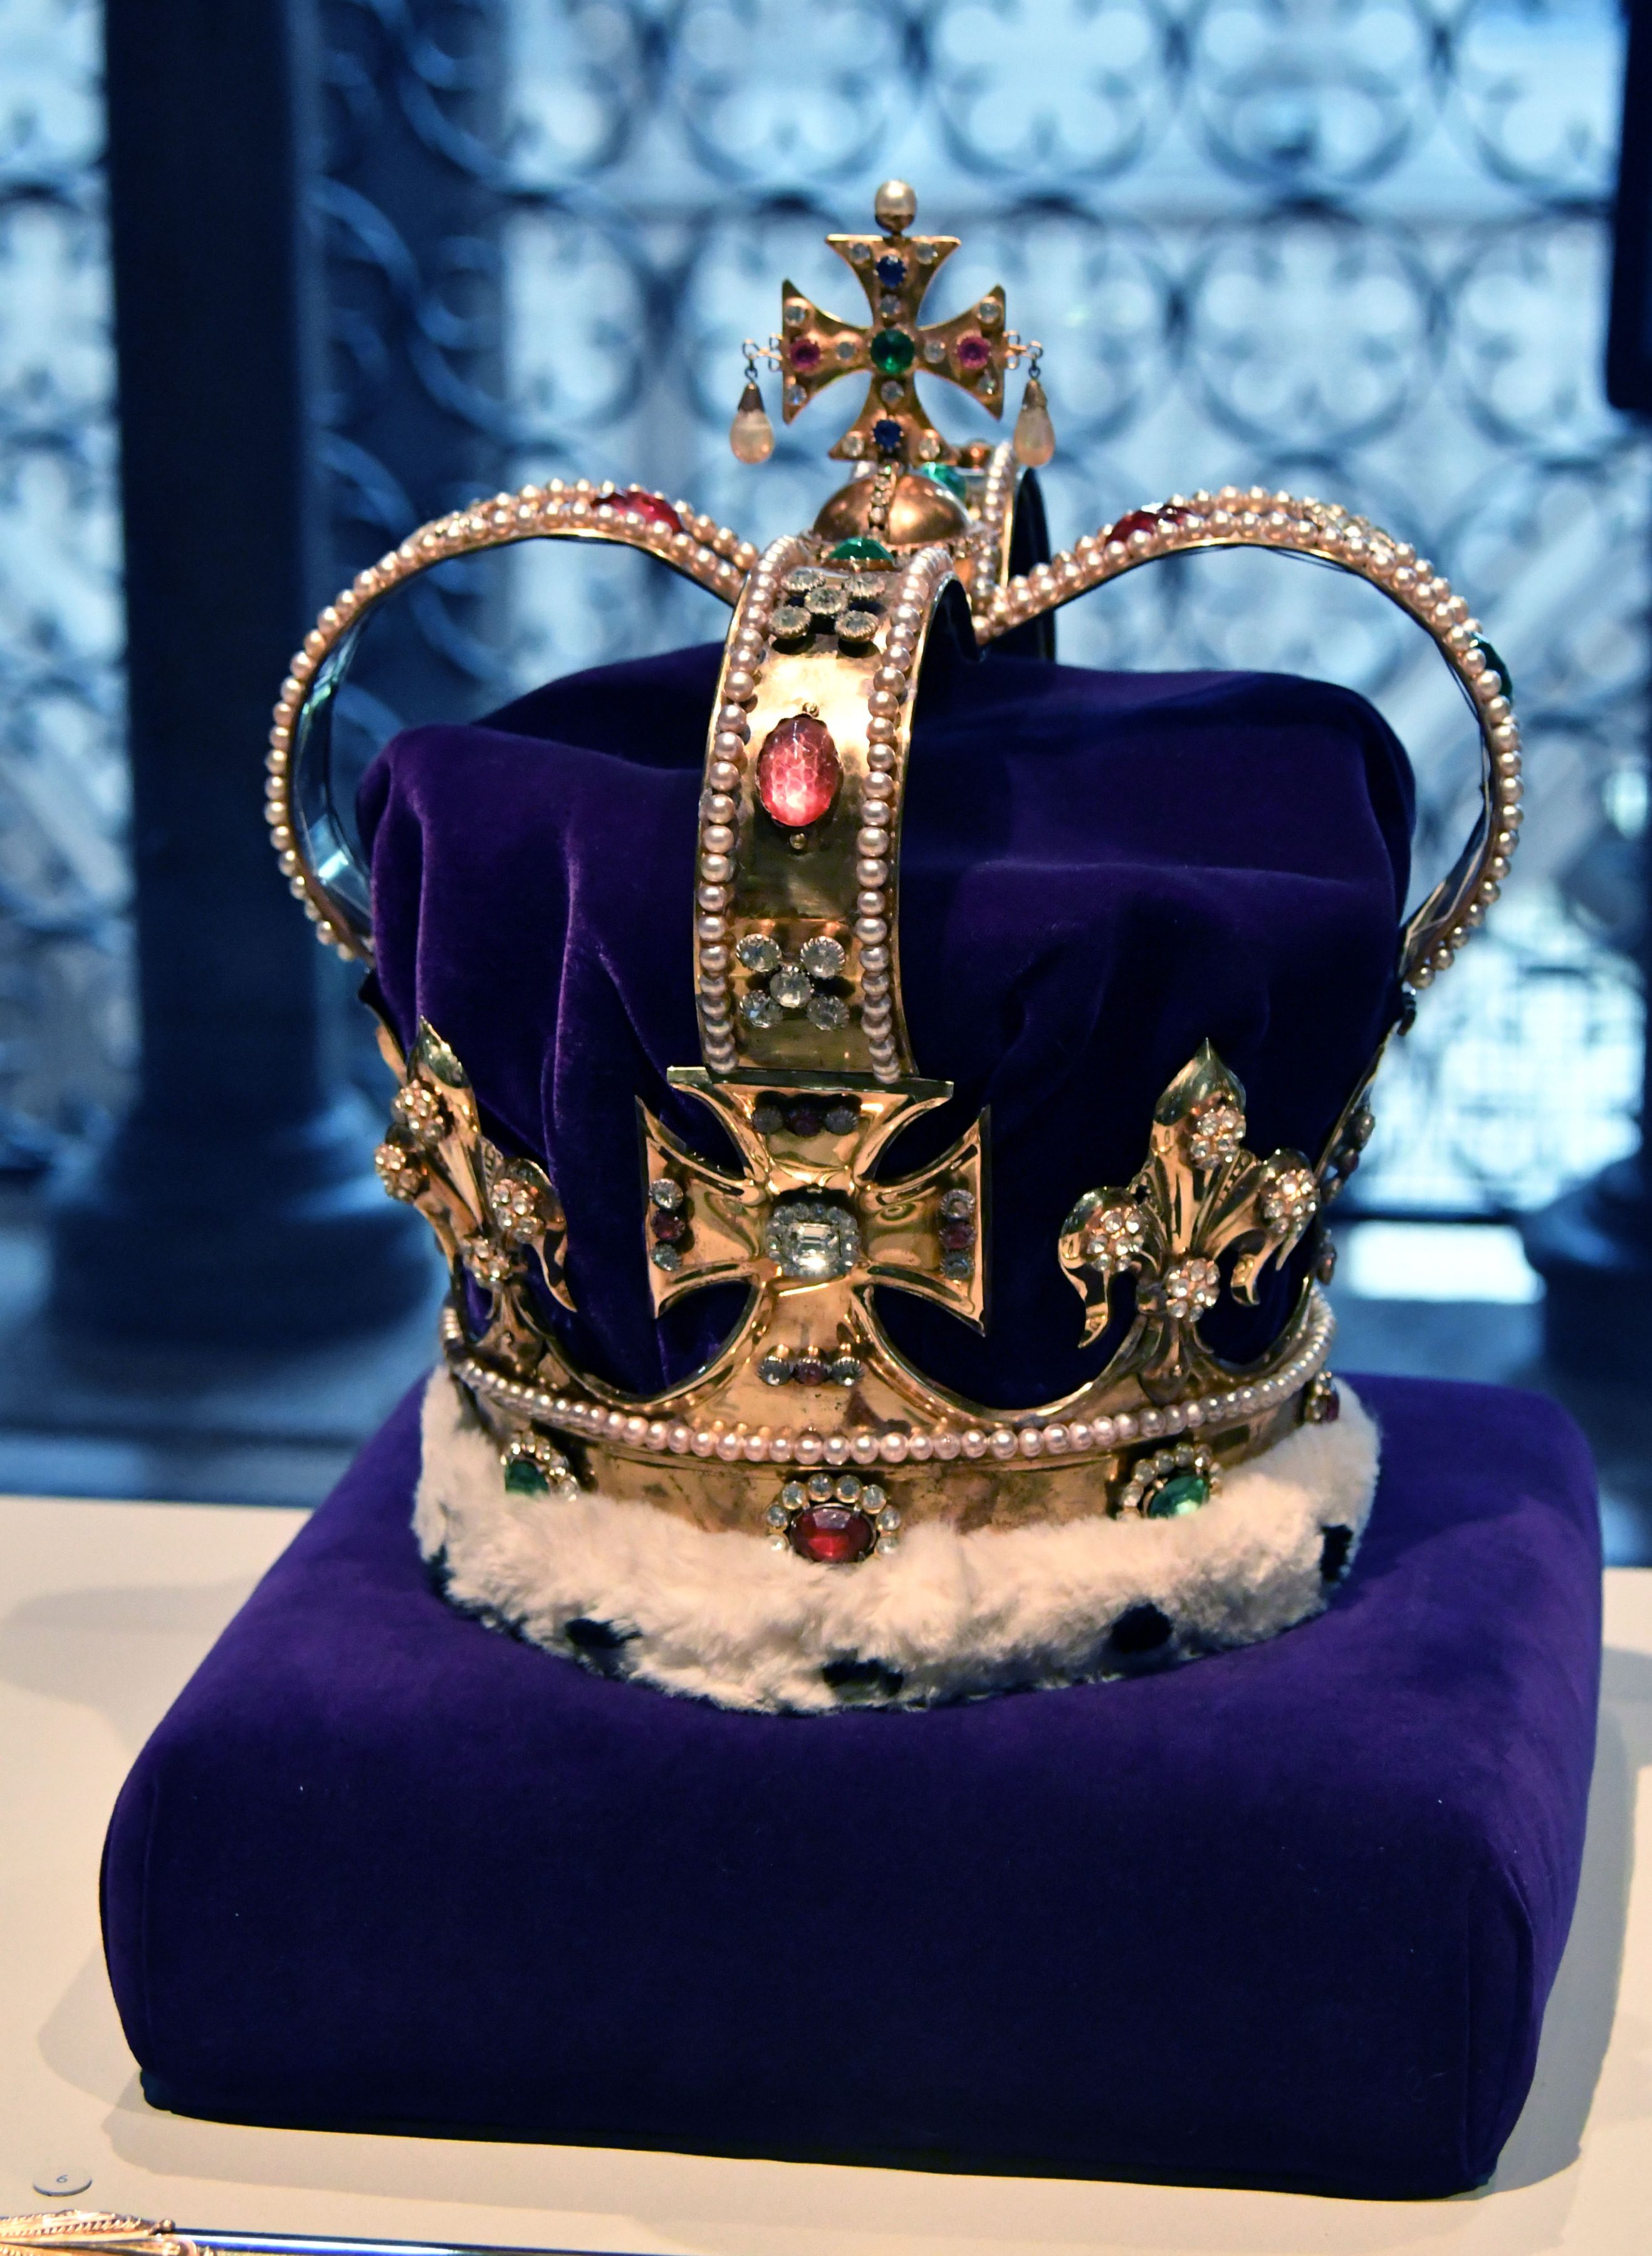 Queen Elizabeth Crown Jewels